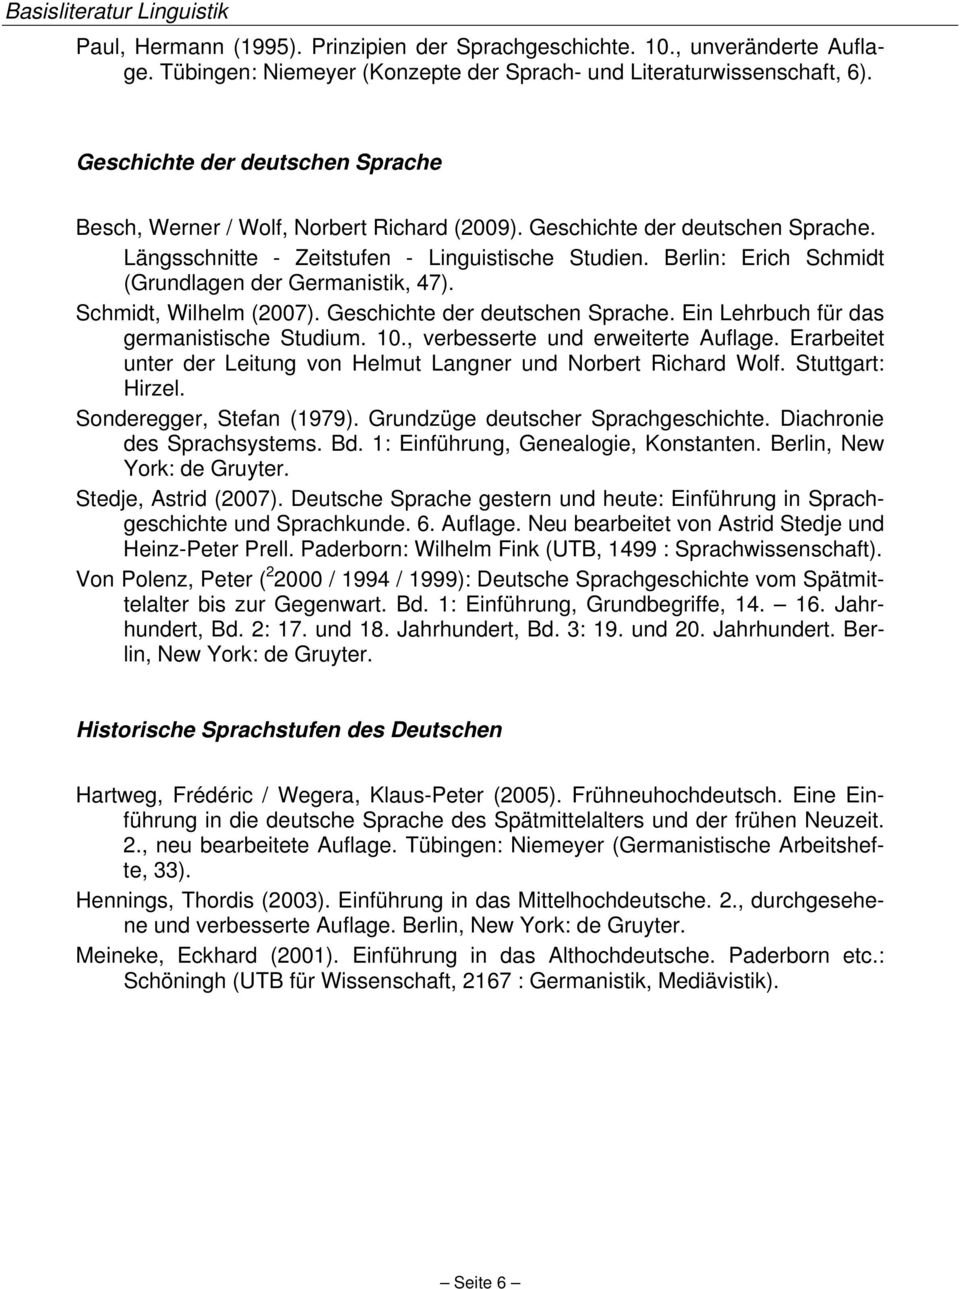 Berlin: Erich Schmidt (Grundlagen der Germanistik, 47). Schmidt, Wilhelm (2007). Geschichte der deutschen Sprache. Ein Lehrbuch für das germanistische Studium. 10., verbesserte und erweiterte Auflage.